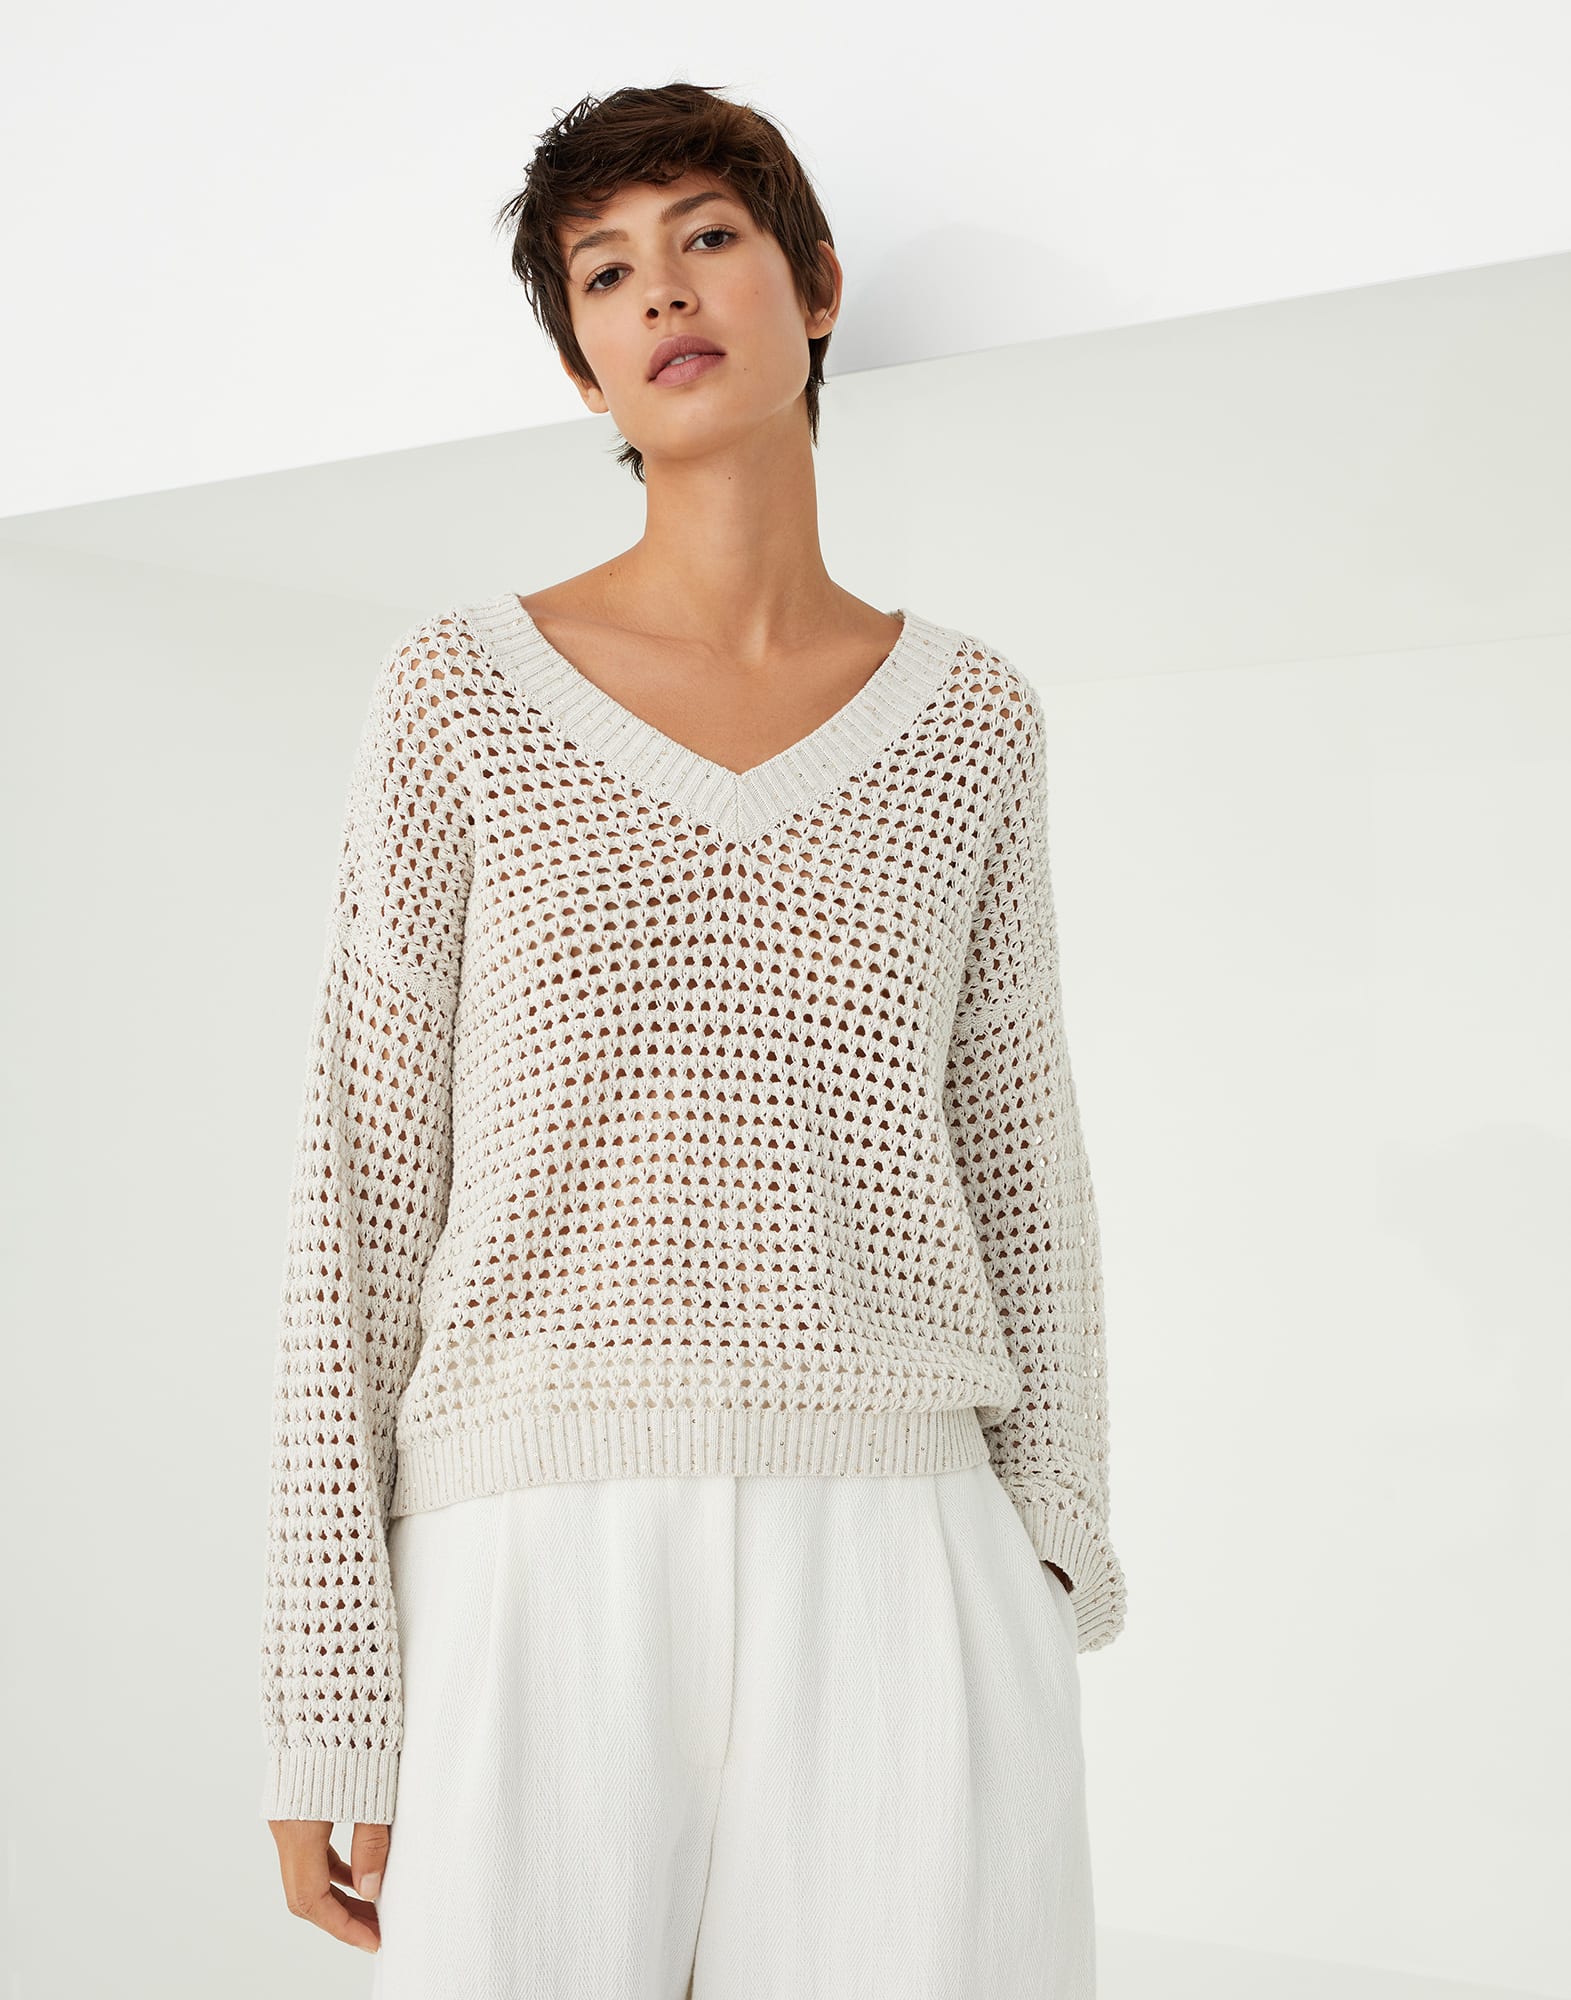 Dazzling Net sweater